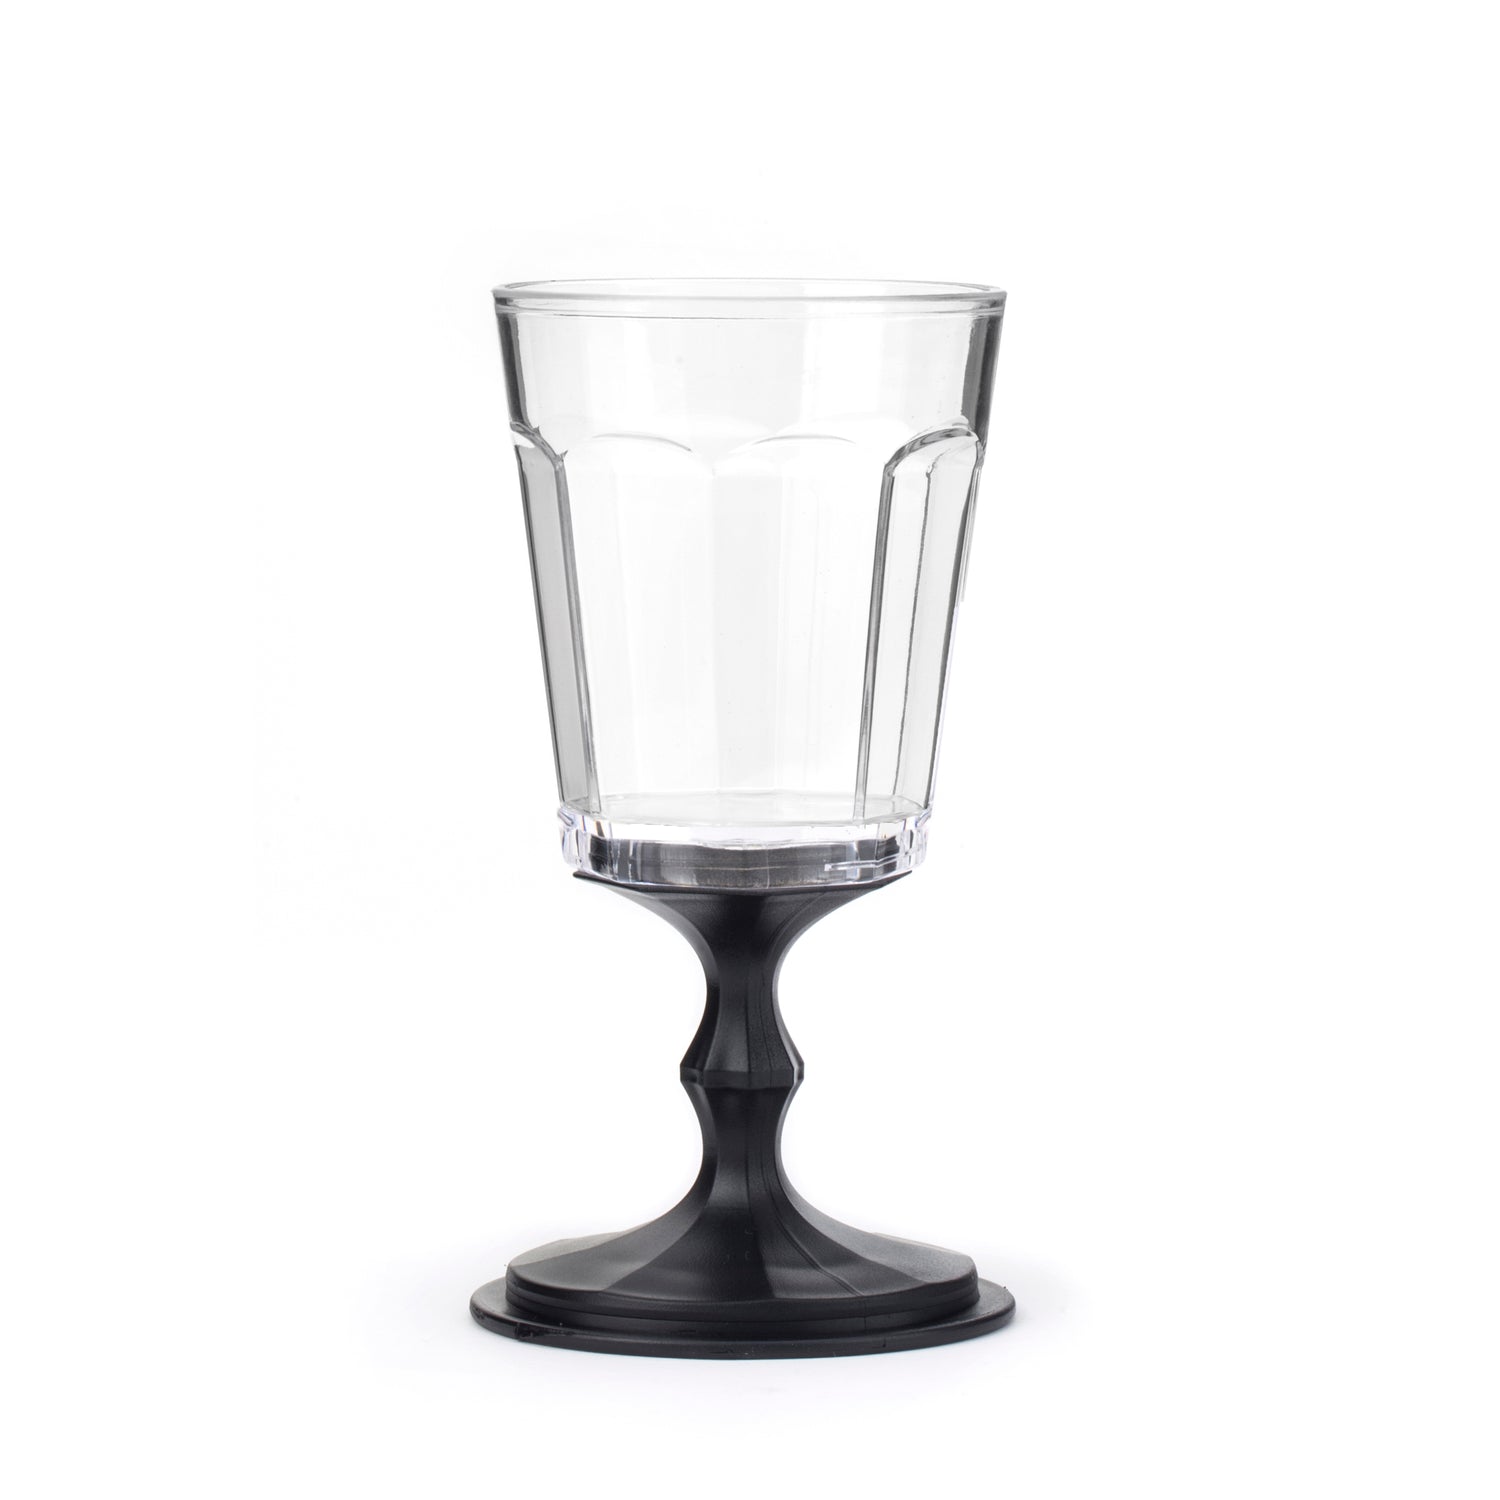 https://kikkerland.com/cdn/shop/products/BA38-BLACK-Stackable-Wine-Glass.jpg?v=1572985647&width=1500